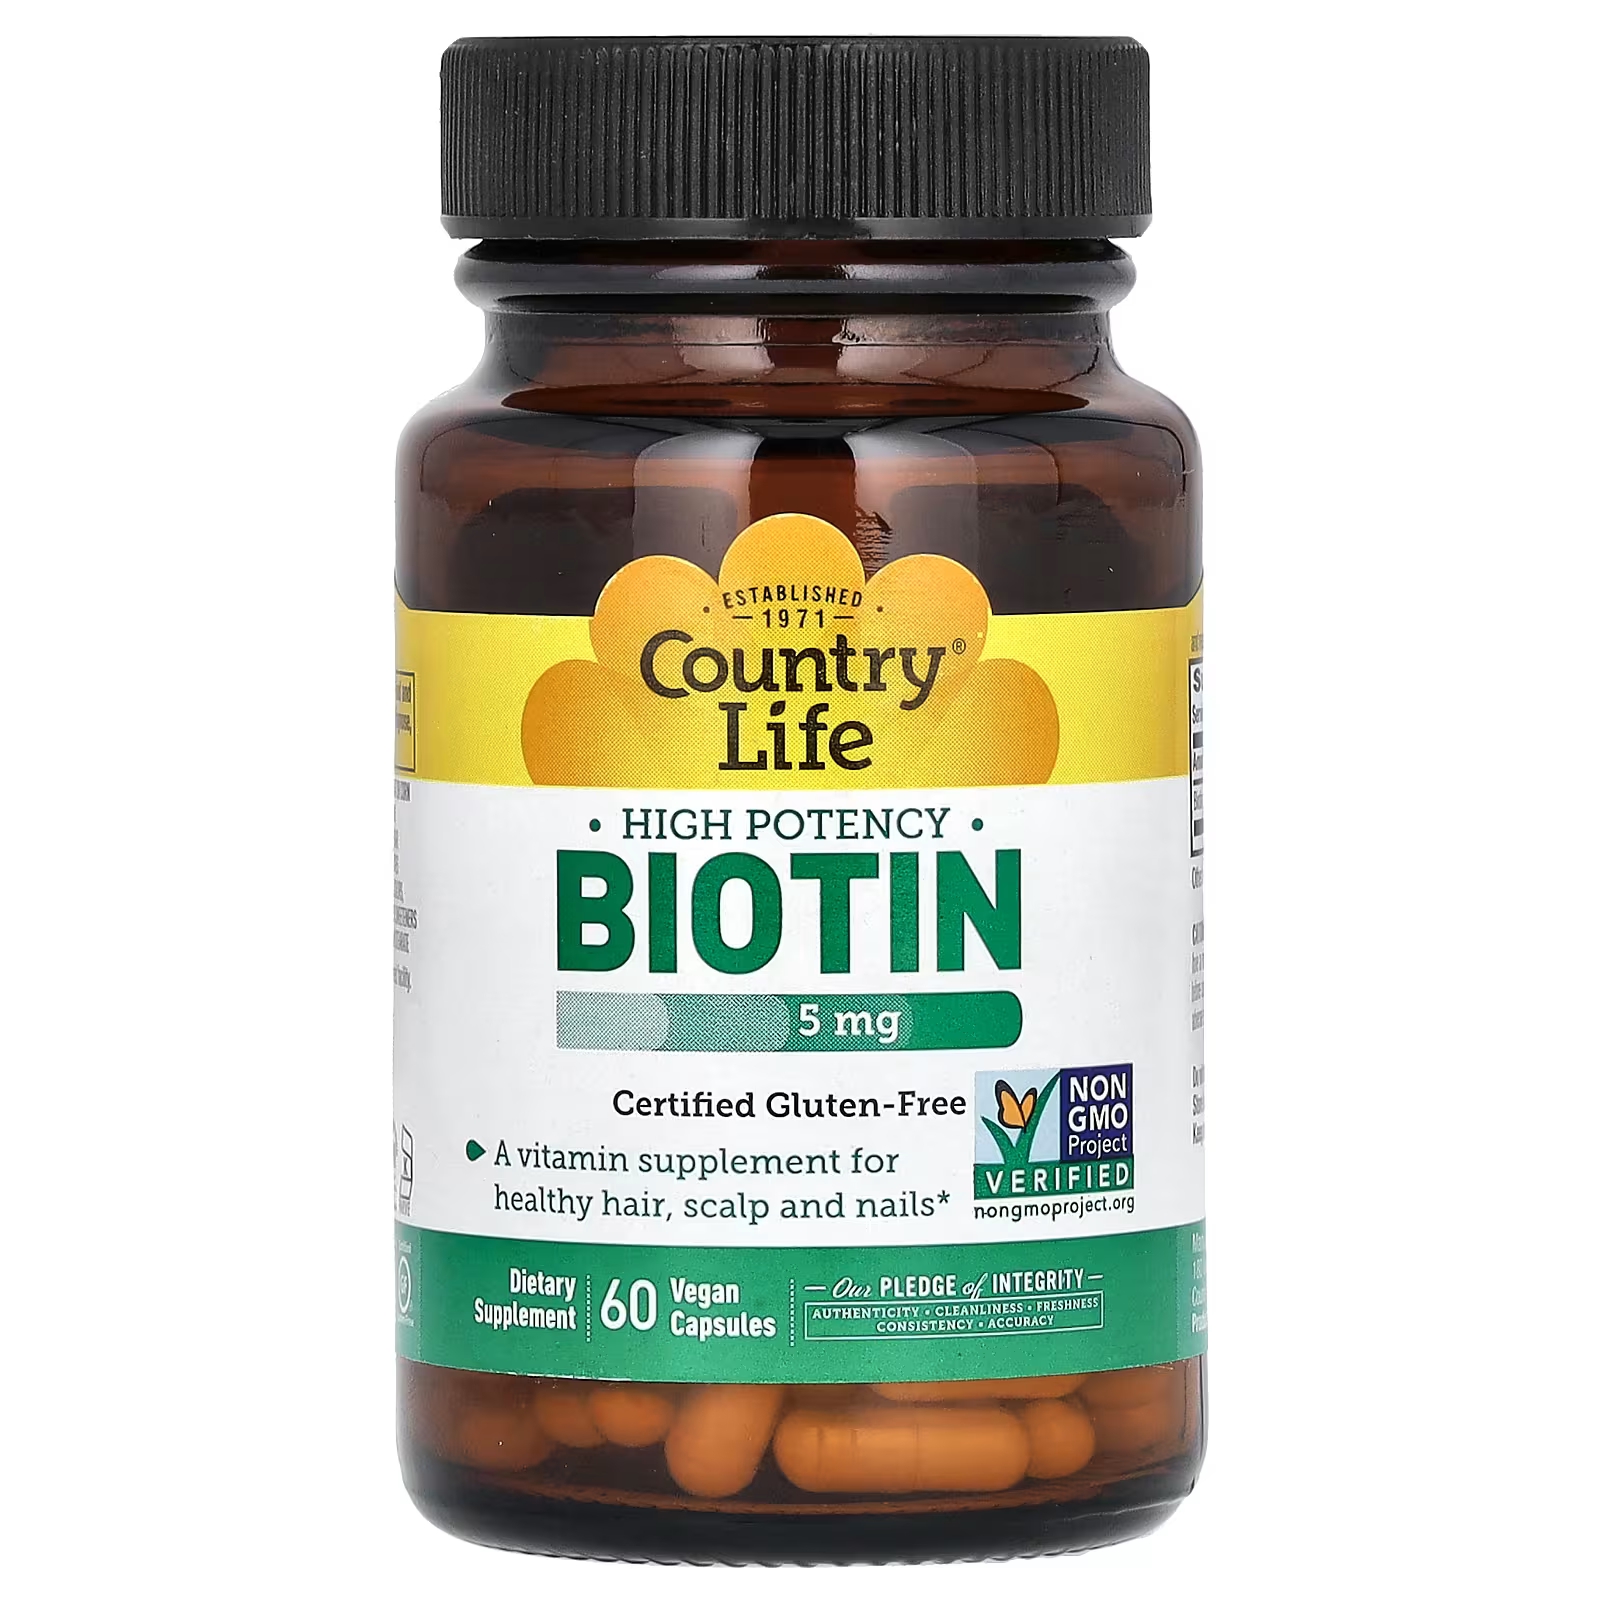 country life высокоэффективный биотин 5 мг 60 вегетарианских капсул Биотин высокой эффективности Country Life 5 мг, 60 веганских капсул